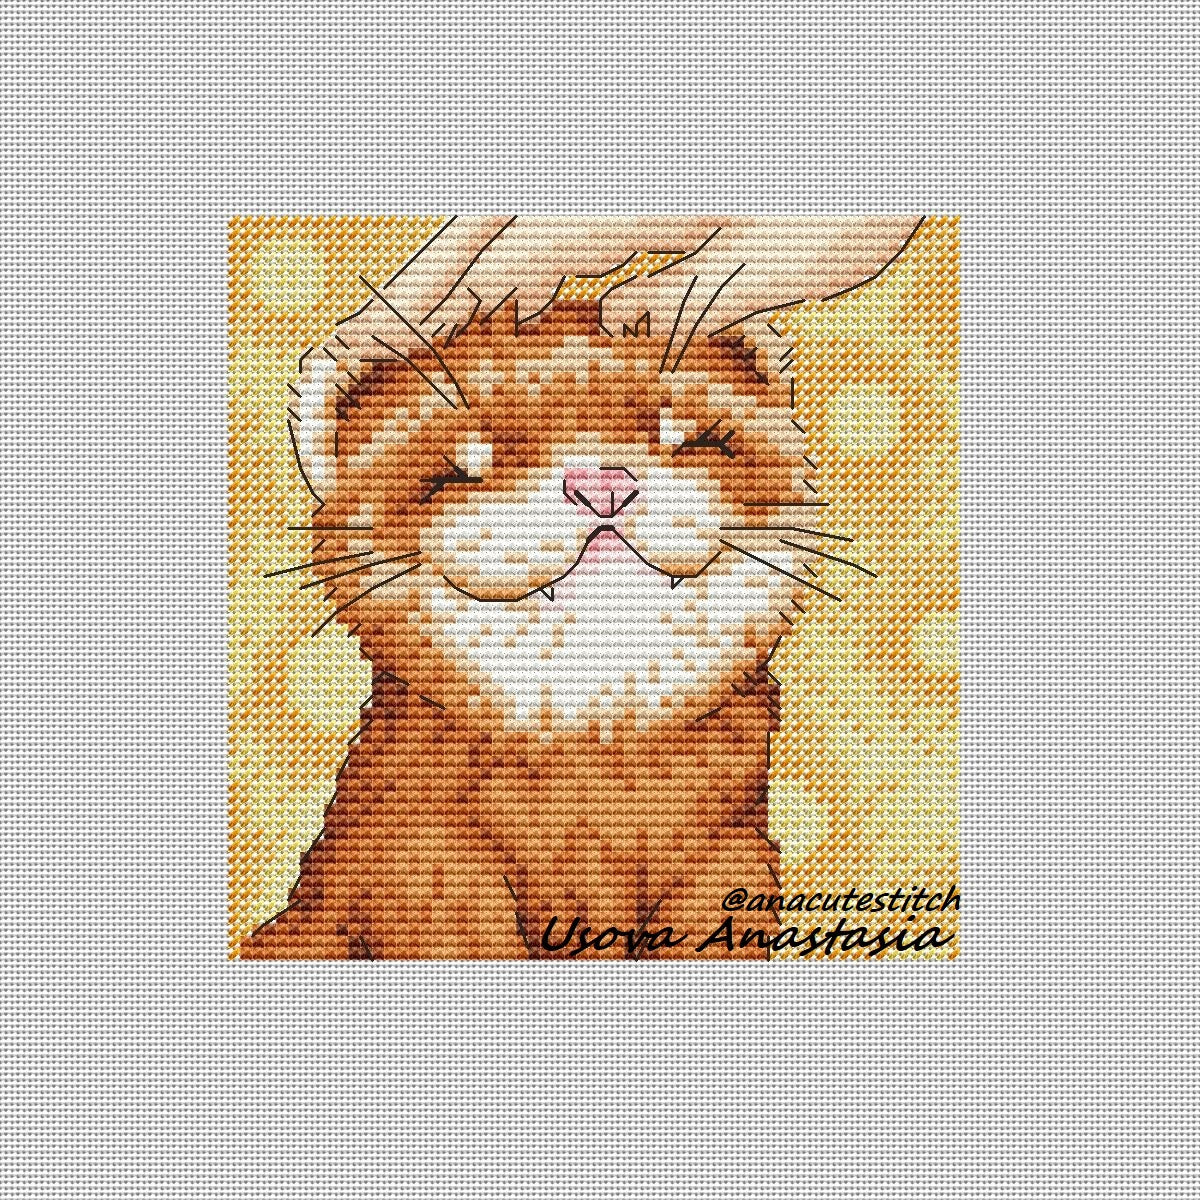 Digital Cross Stitch Pattern "Ferret. Cute"